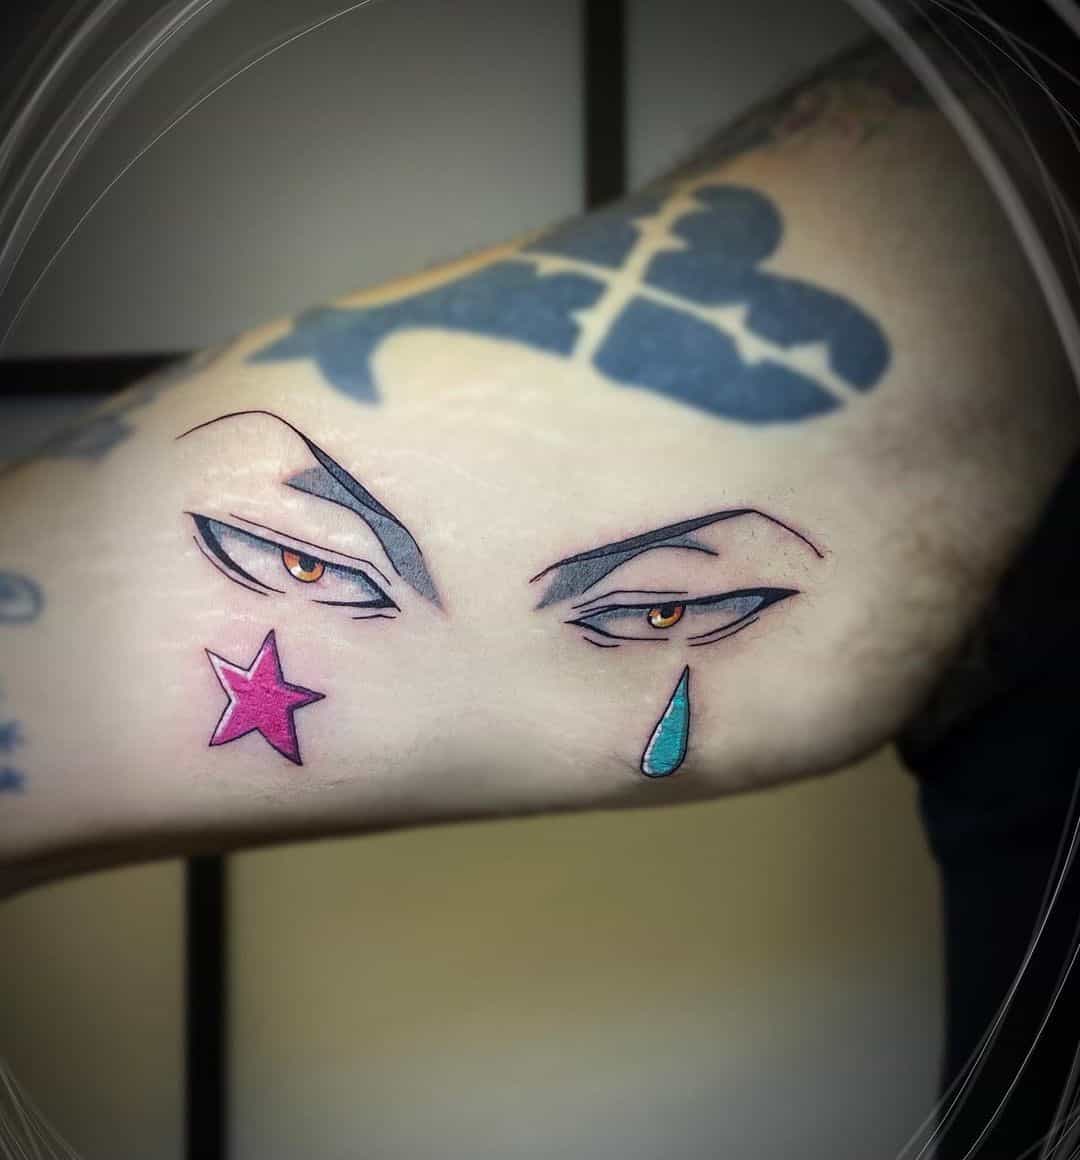 Tatuaje de la compañía fantasma Star & Tear